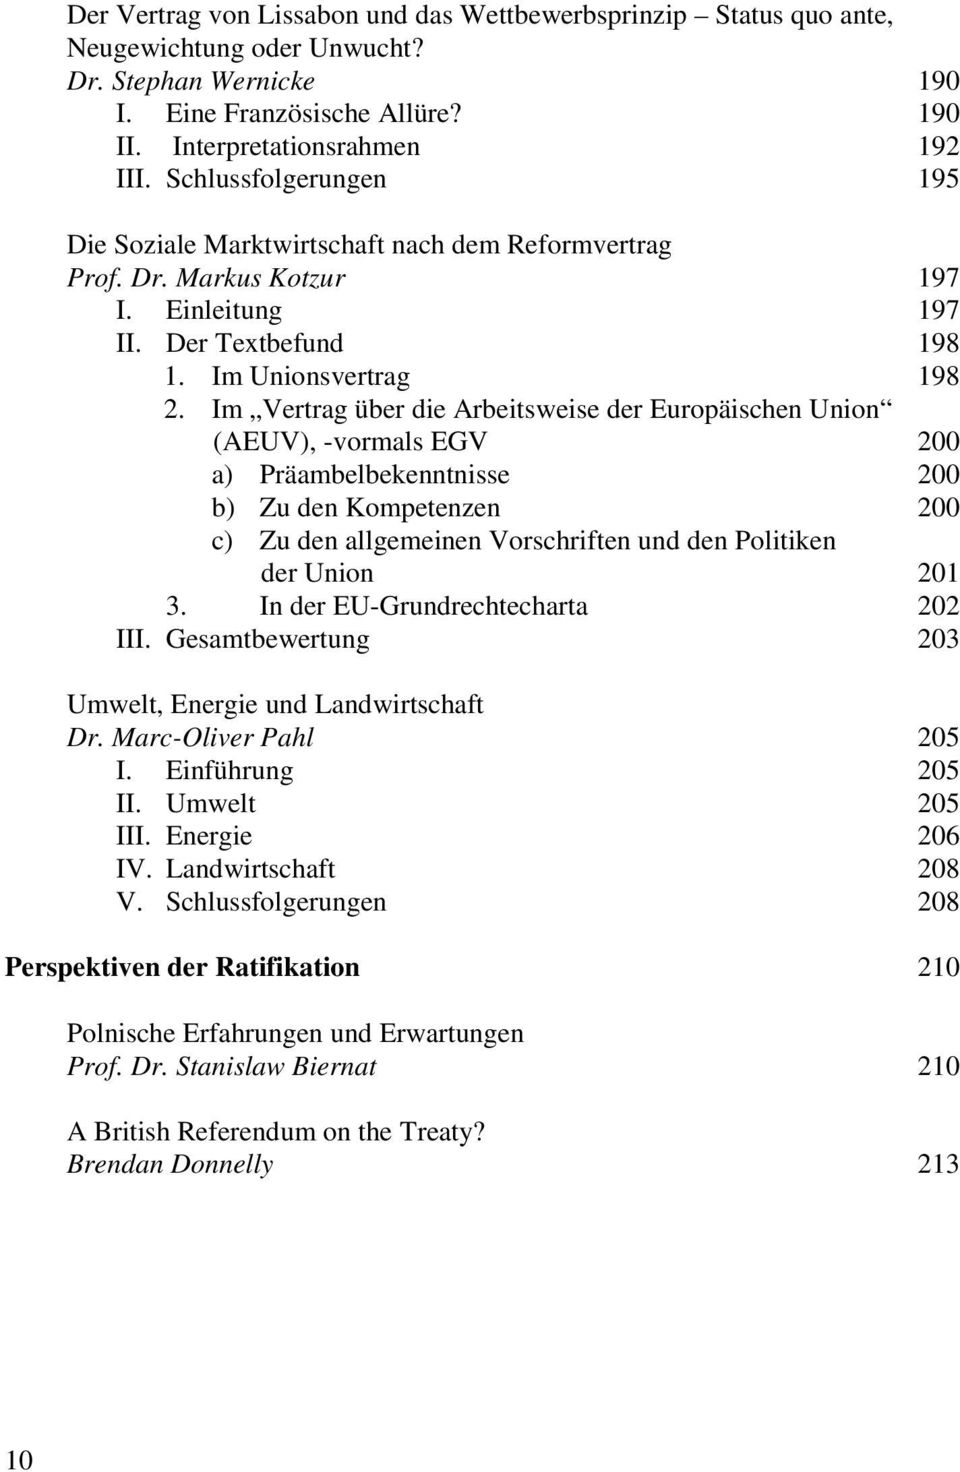 Im Vertrag über die Arbeitsweise der Europäischen Union (AEUV), -vormals EGV 200 a) Präambelbekenntnisse 200 b) Zu den Kompetenzen 200 c) Zu den allgemeinen Vorschriften und den Politiken der Union